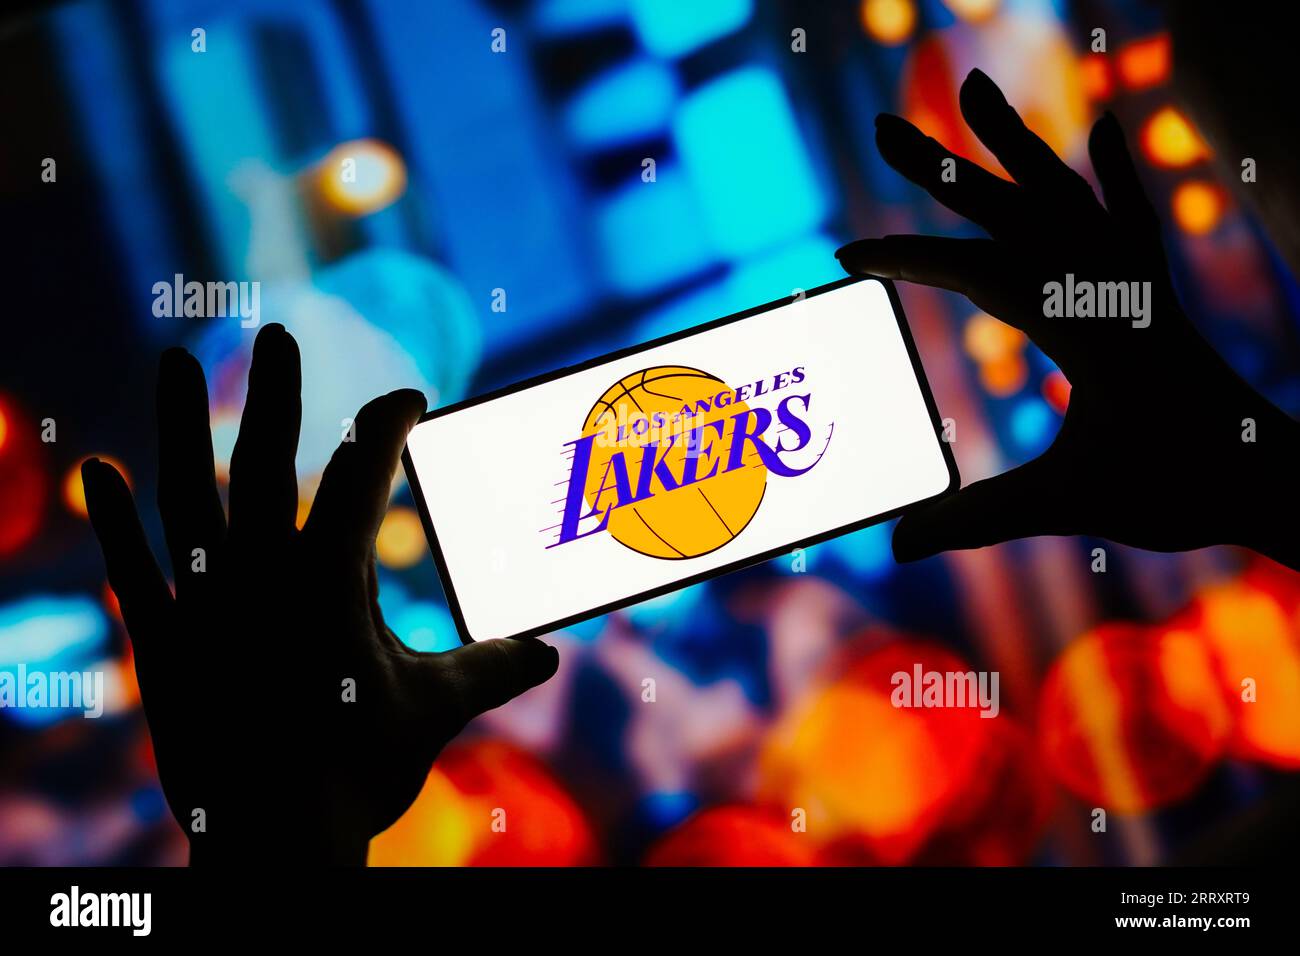 Lakers Wallpaper  Lakers logo, Lakers basketball, Lakers